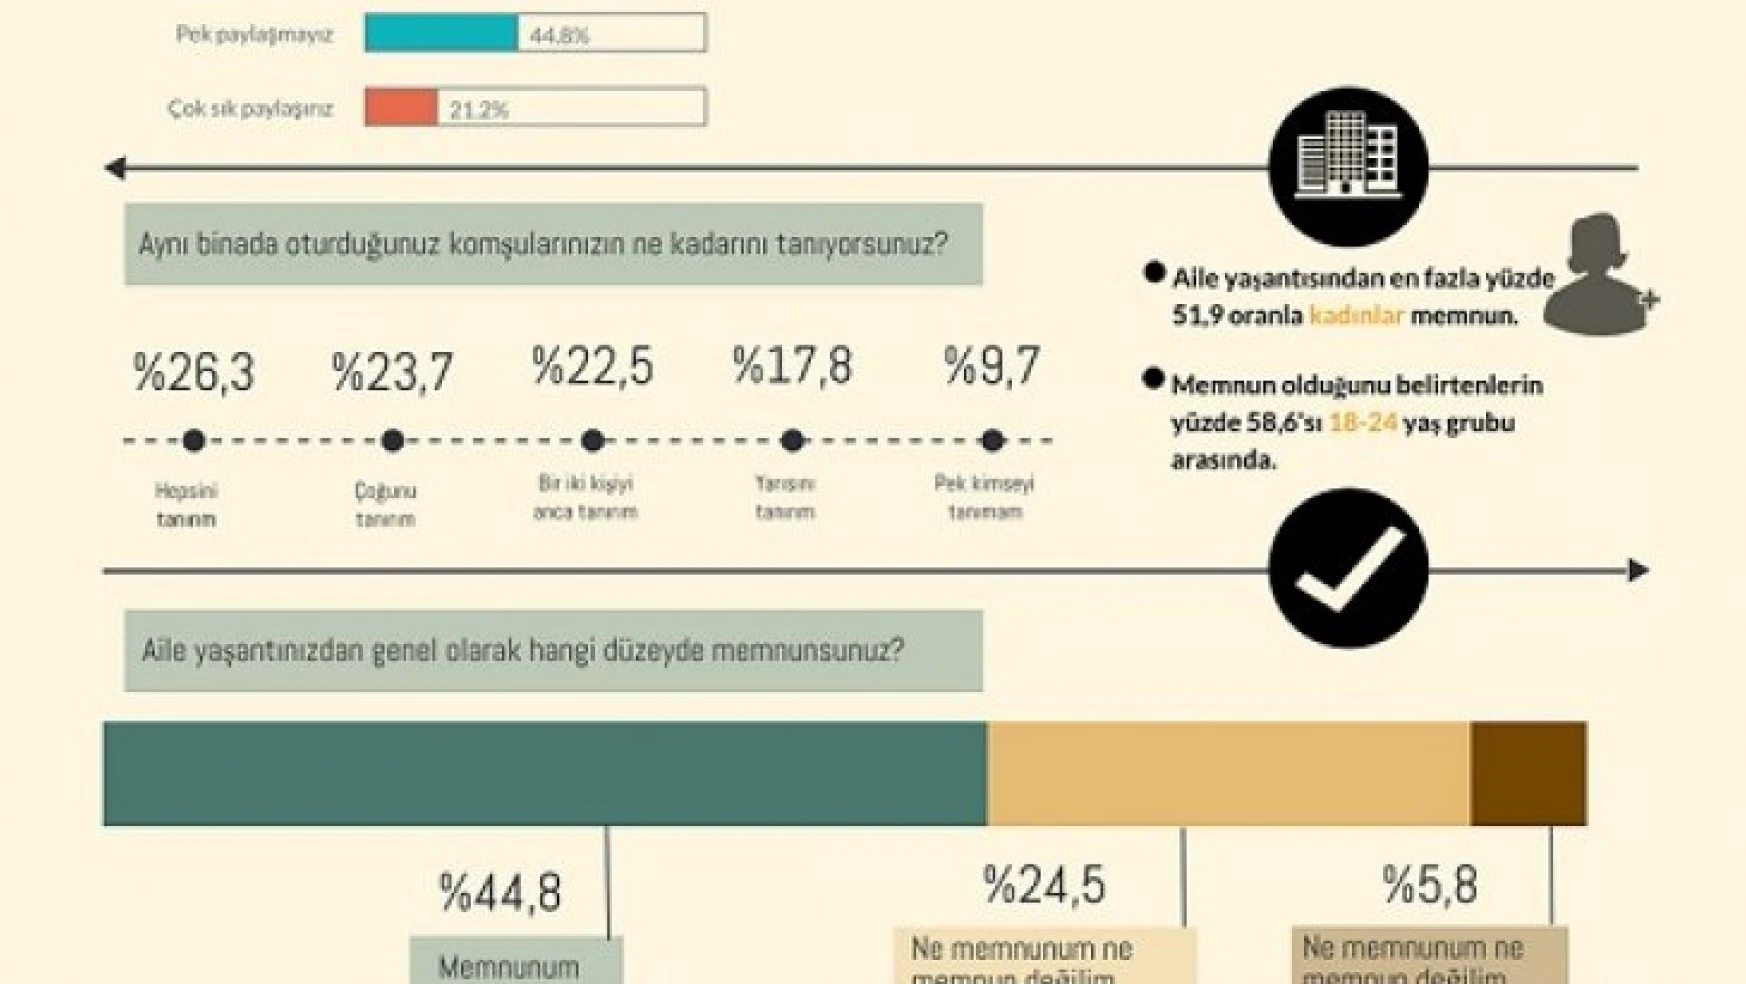 Türk toplumunun yüzde 64'ü aile yaşantısından memnun